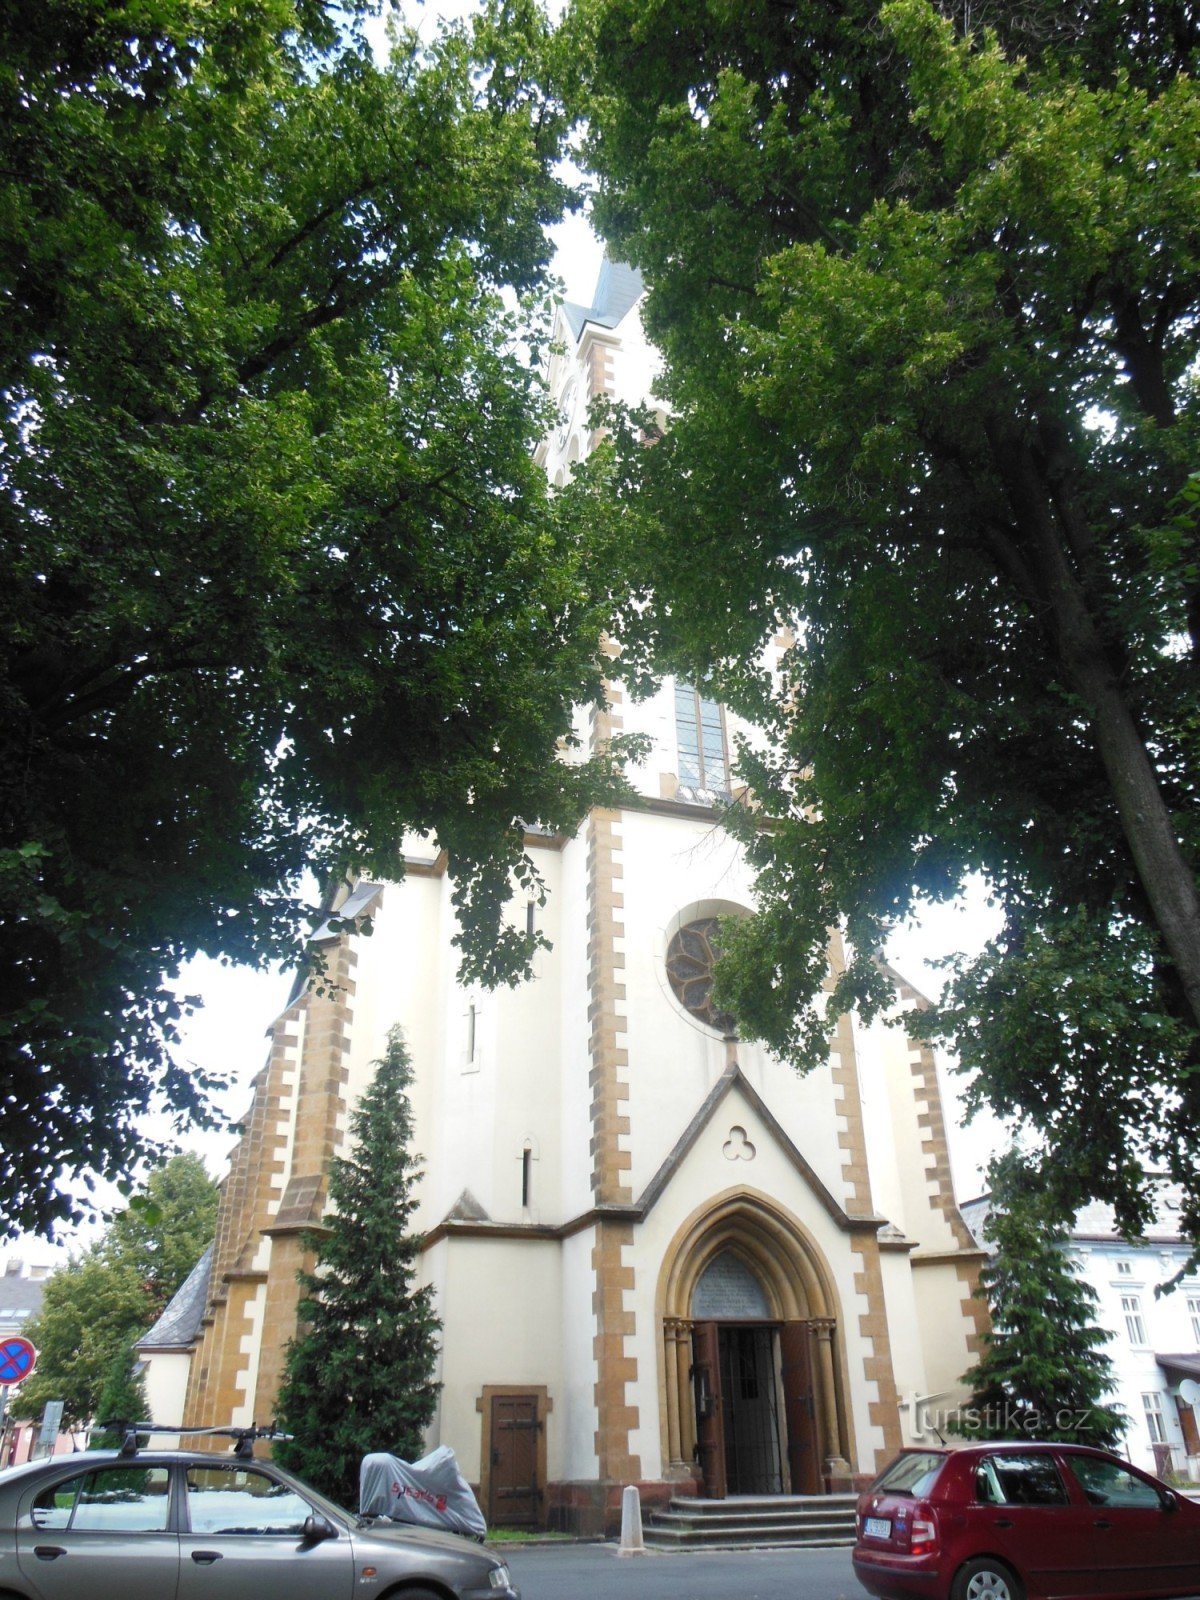 quang cảnh nhà thờ qua những cây bằng lăng của Lipový náměstí